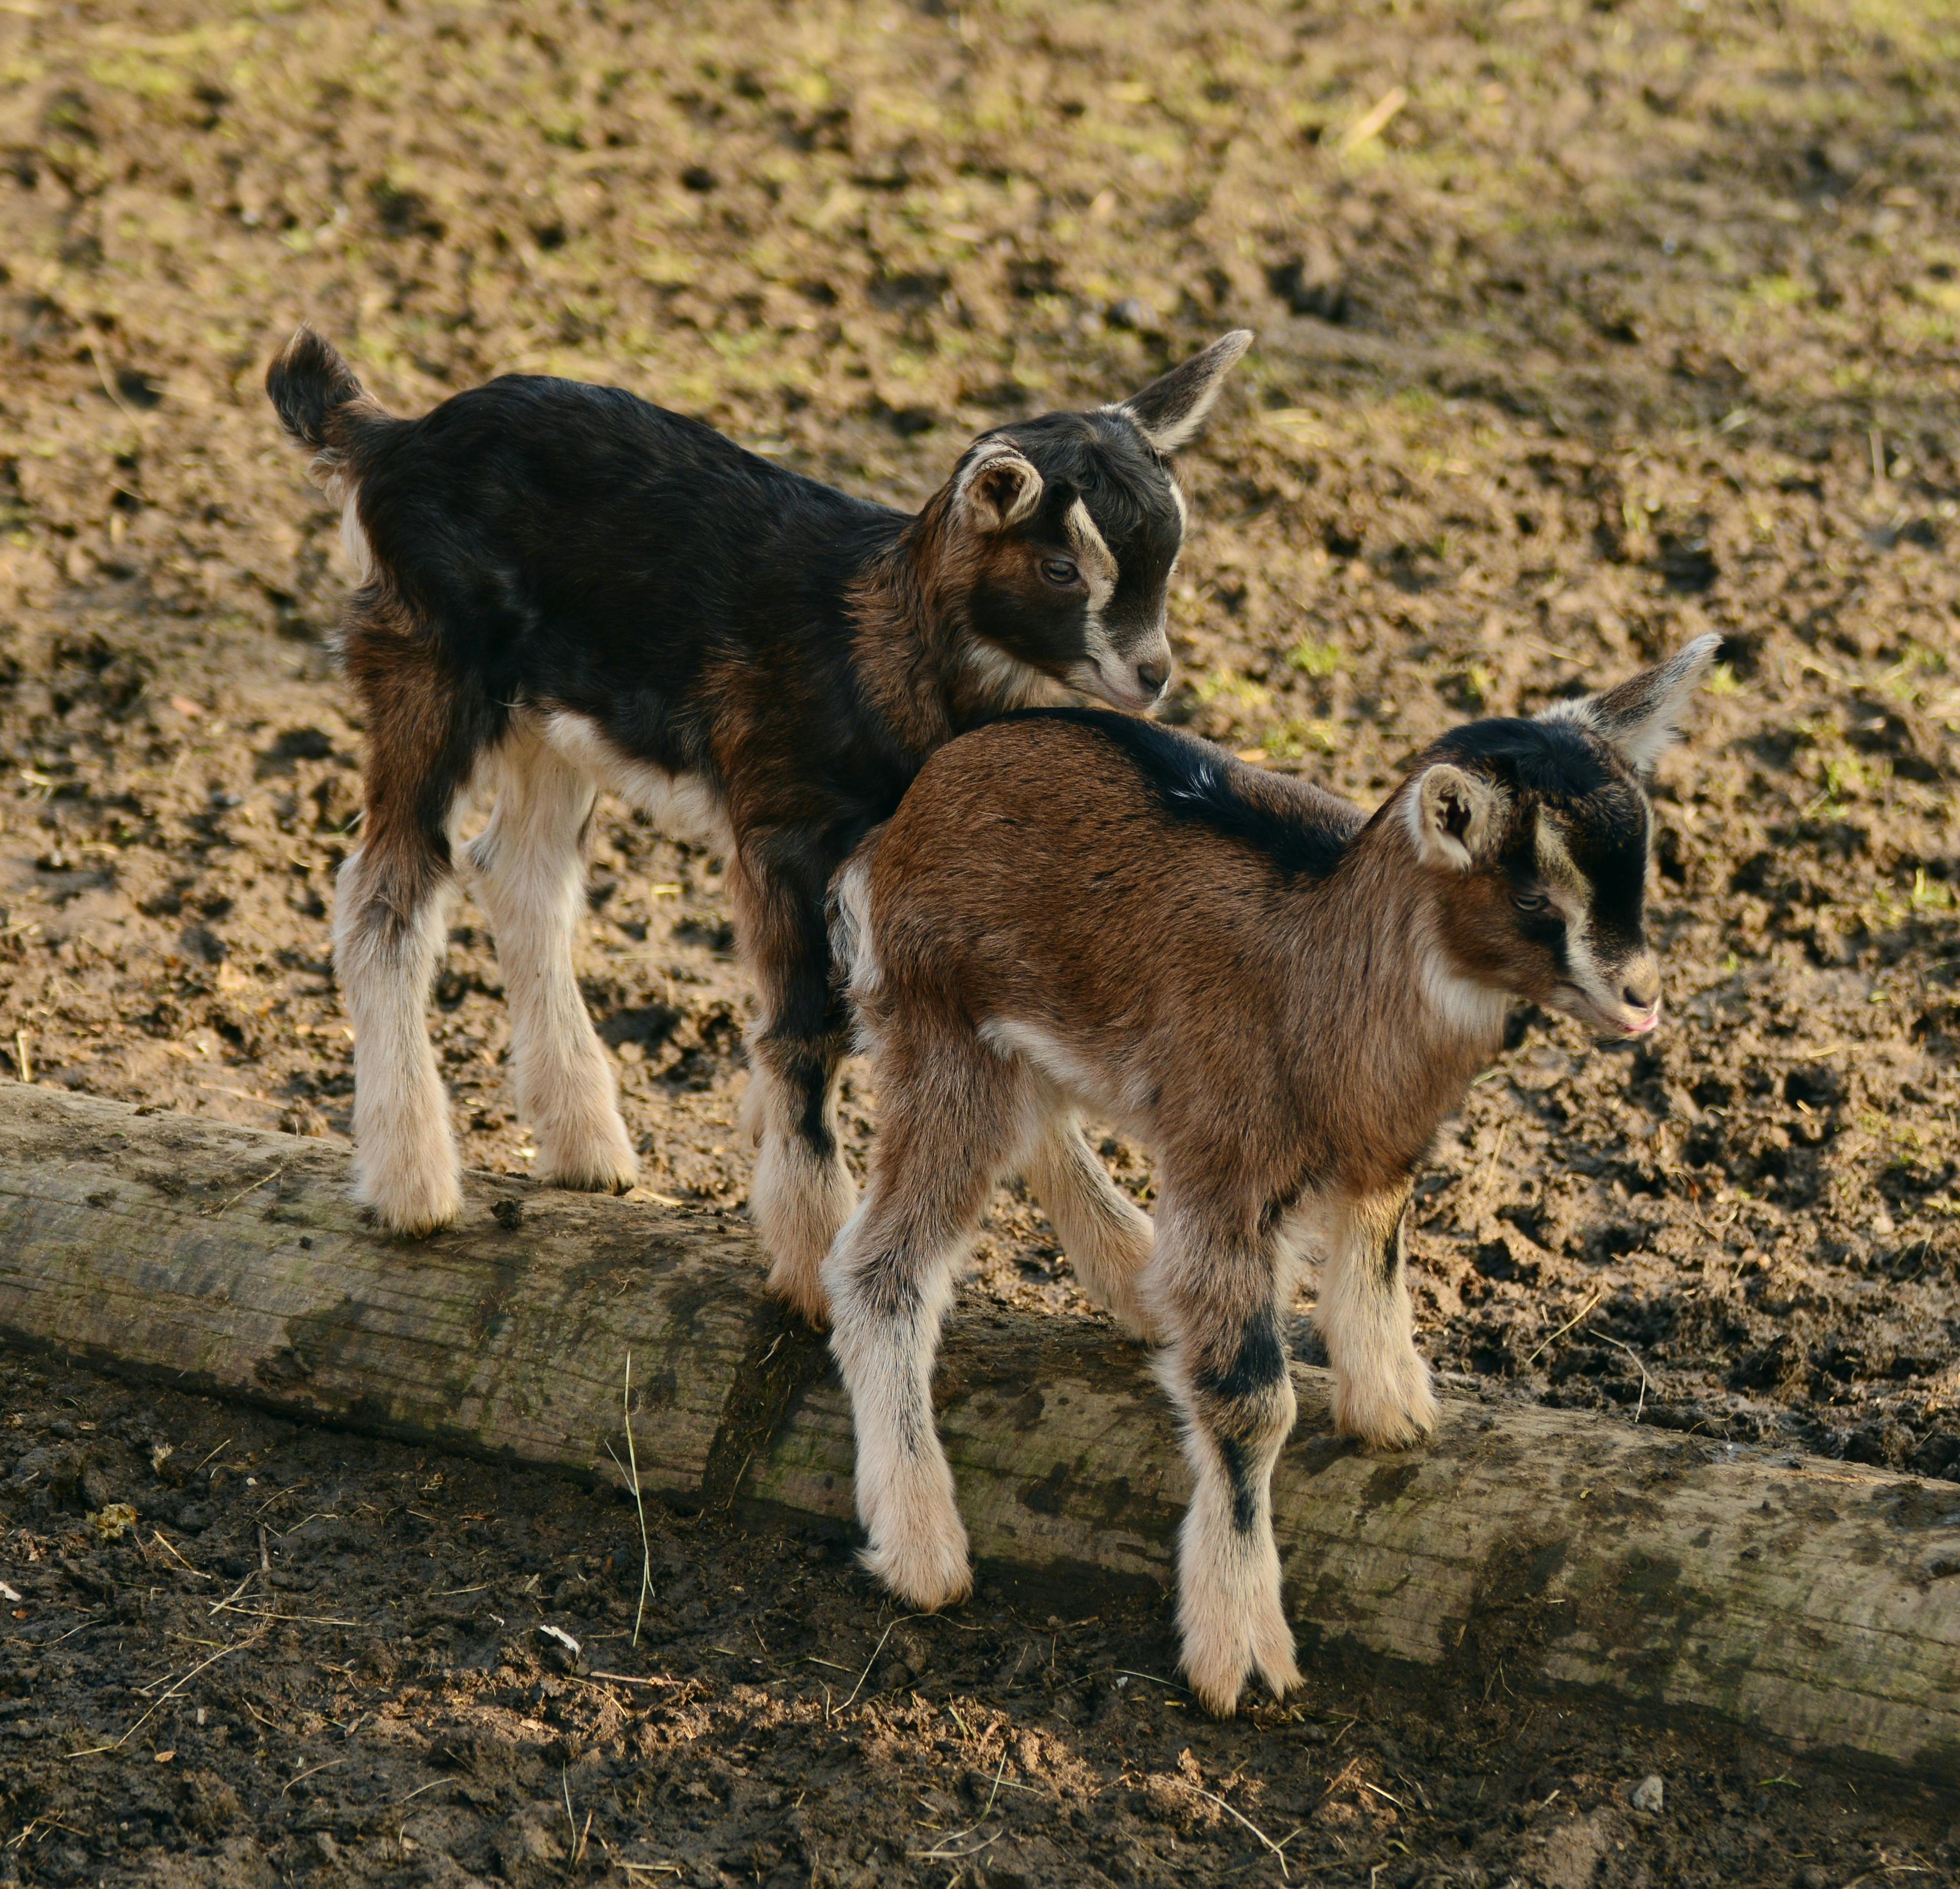 12837 Goat Wallpaper Images Stock Photos  Vectors  Shutterstock